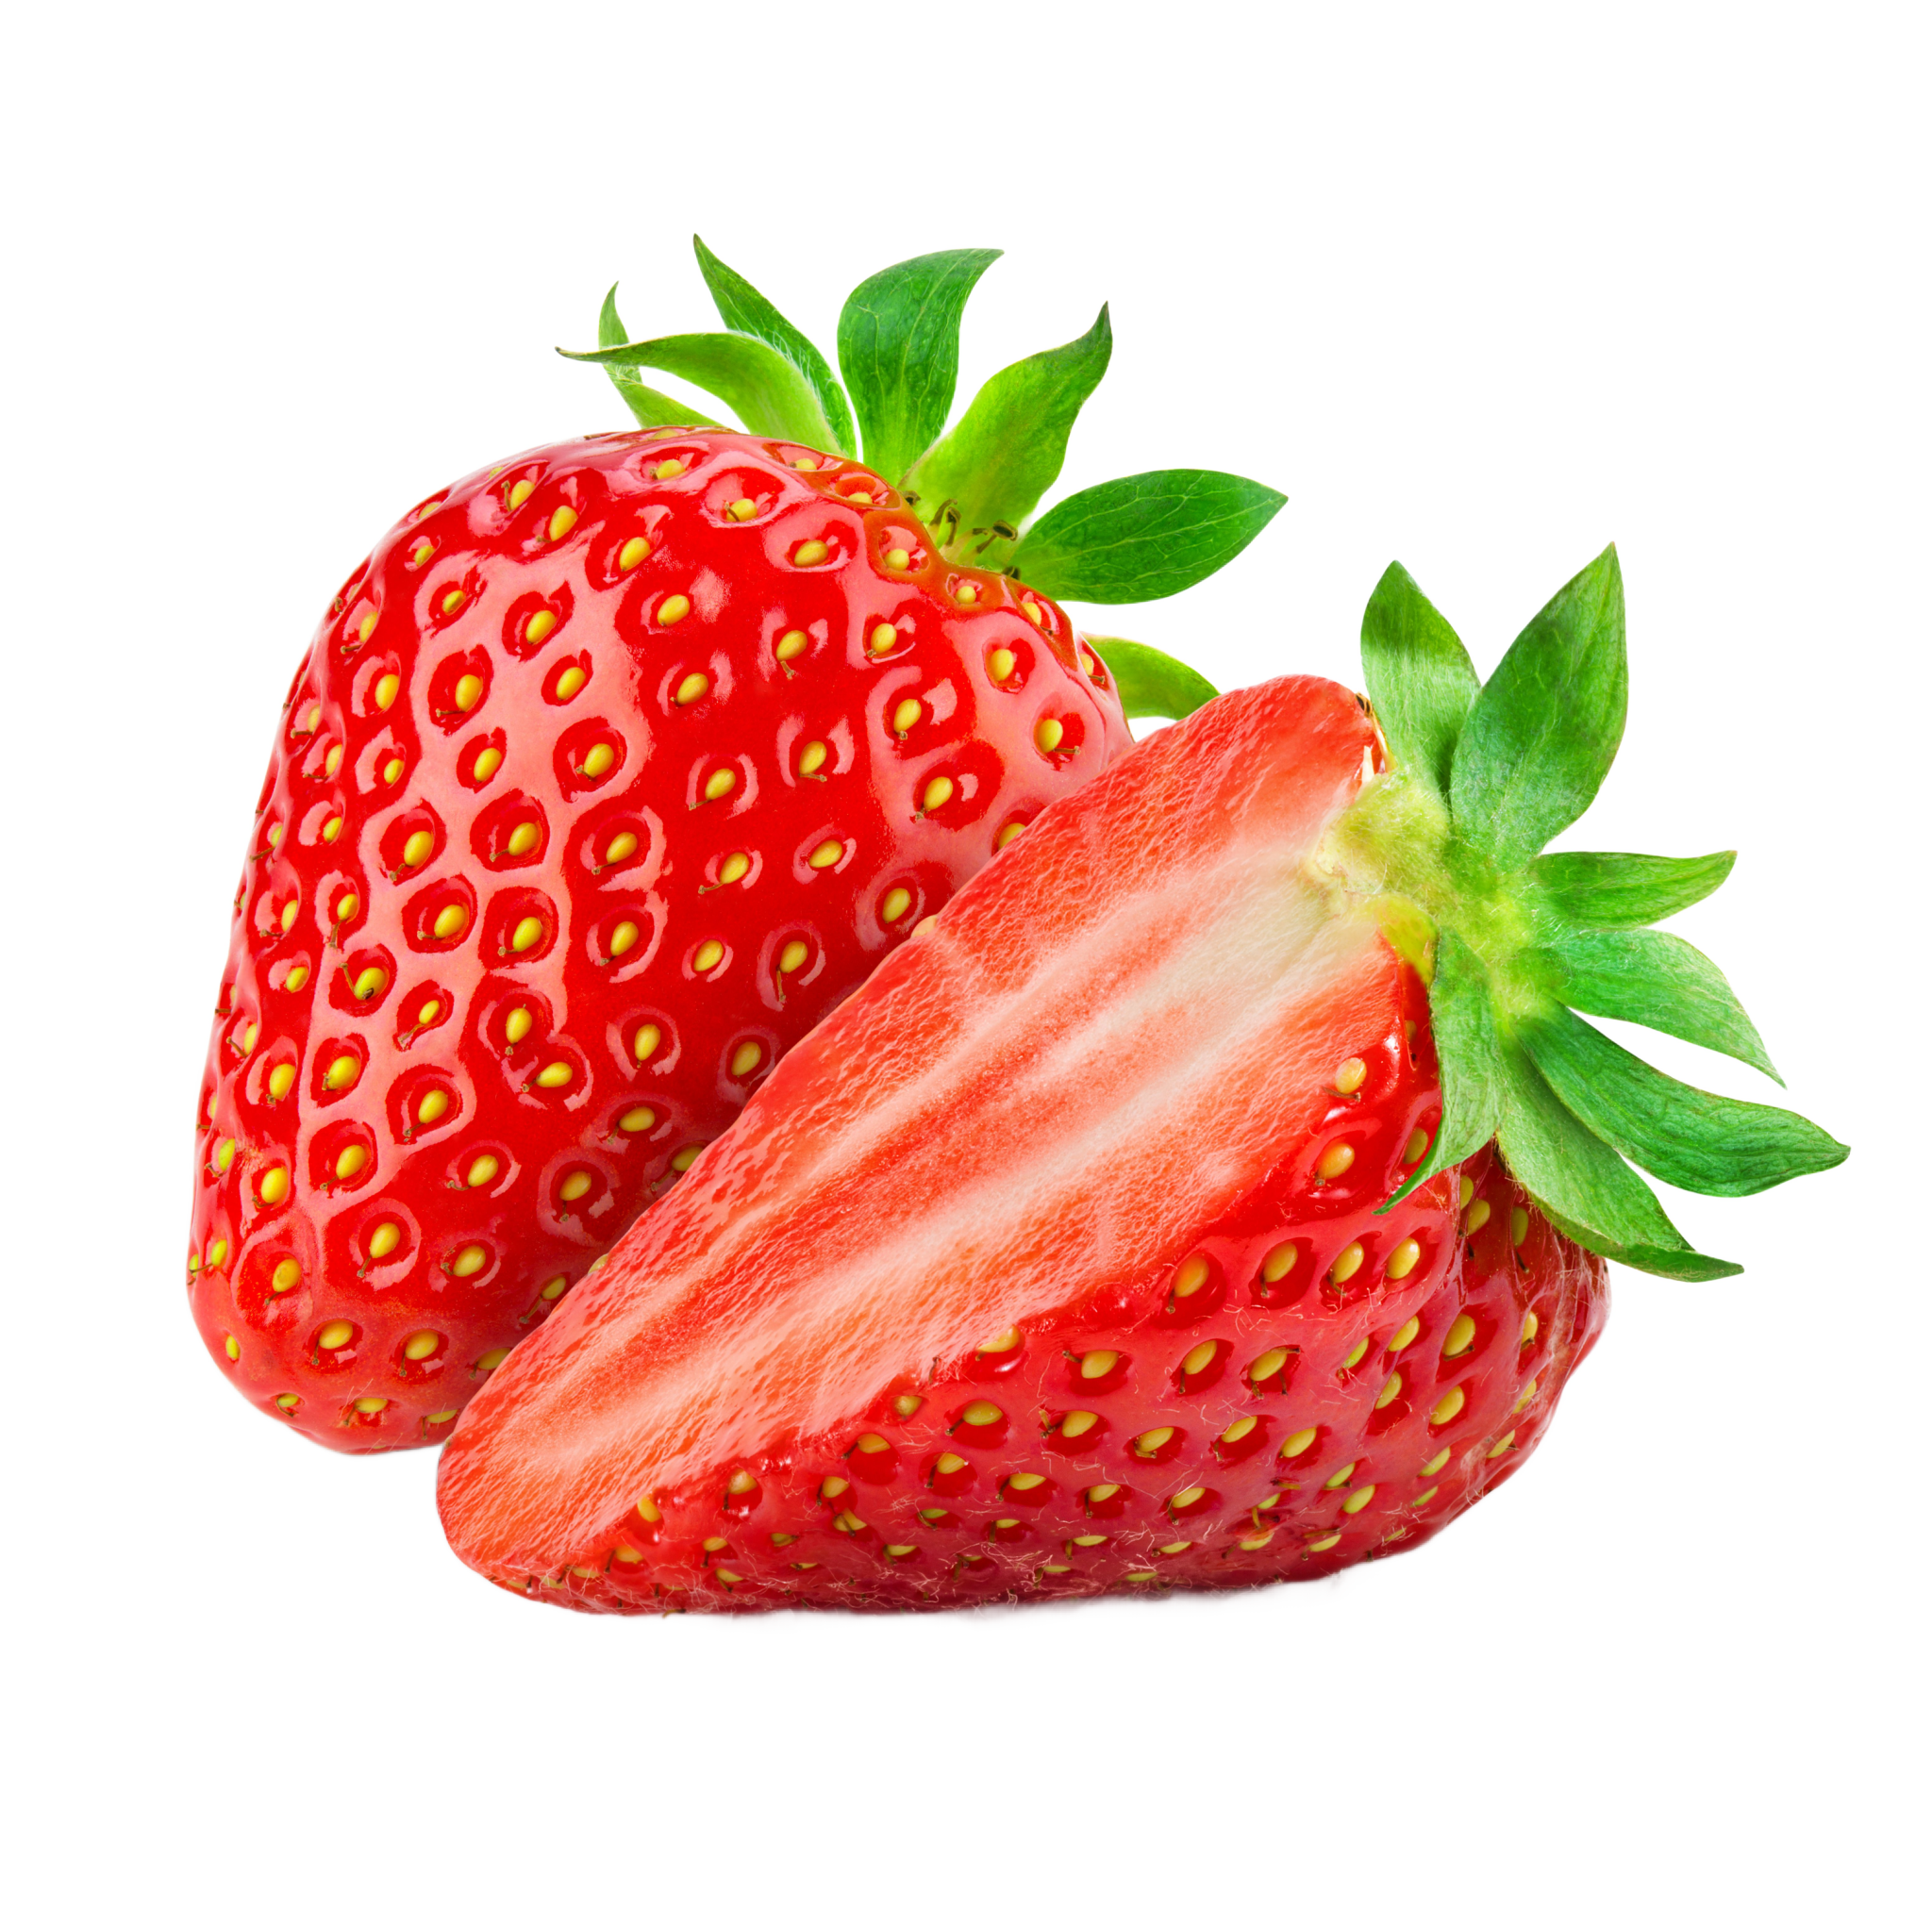 Organic Strawberries